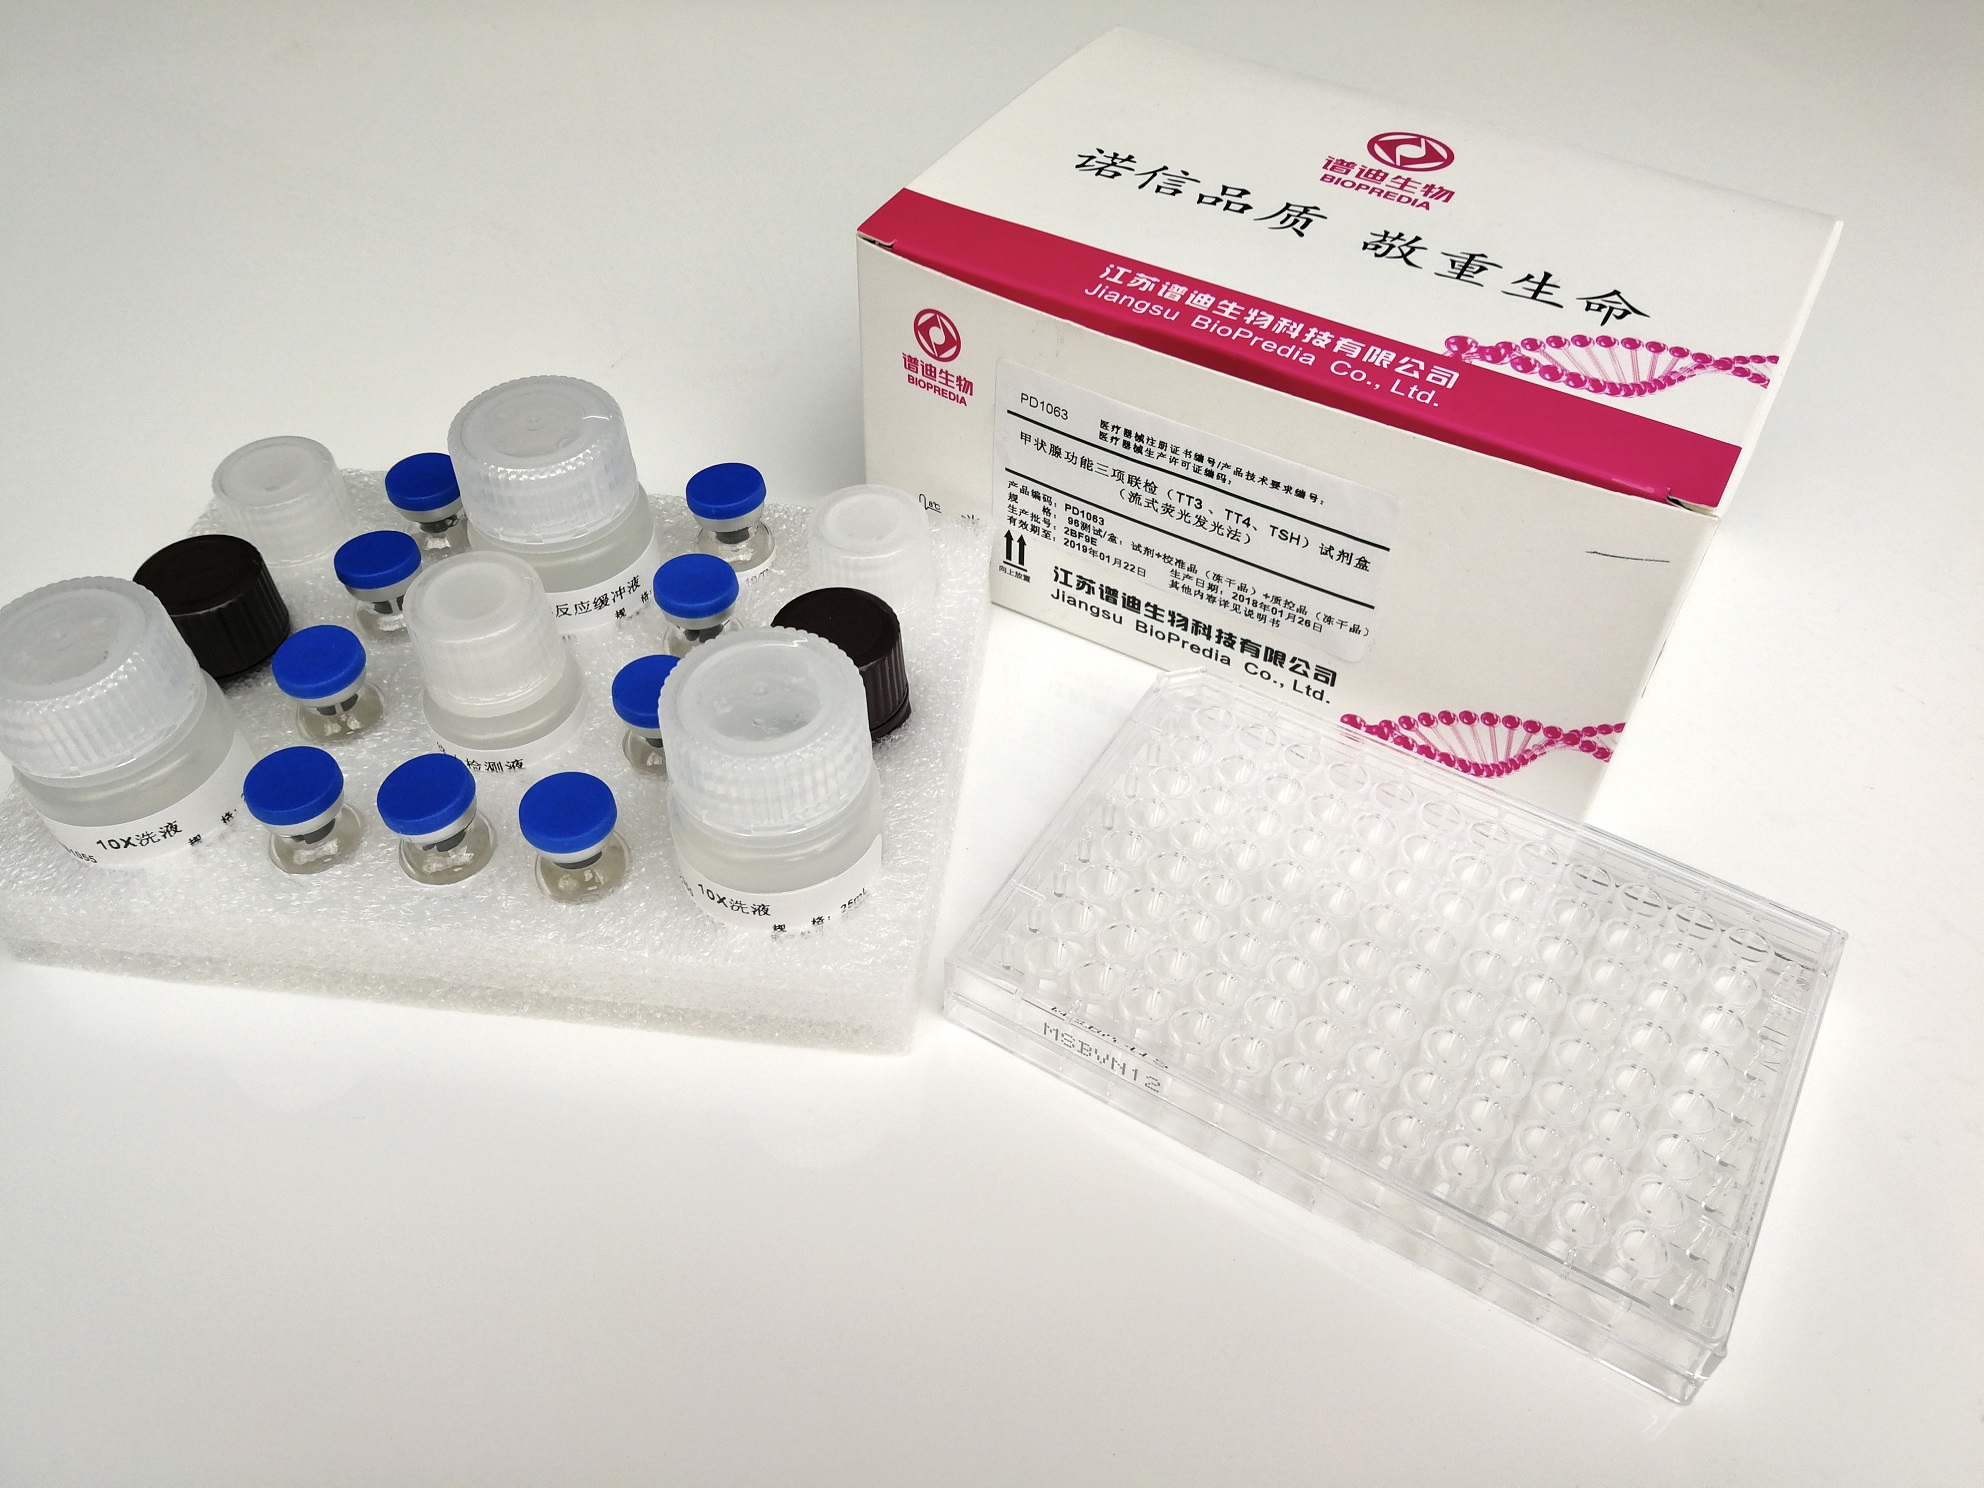 【BIOPREDIA】甲状腺功能三项联检试剂盒